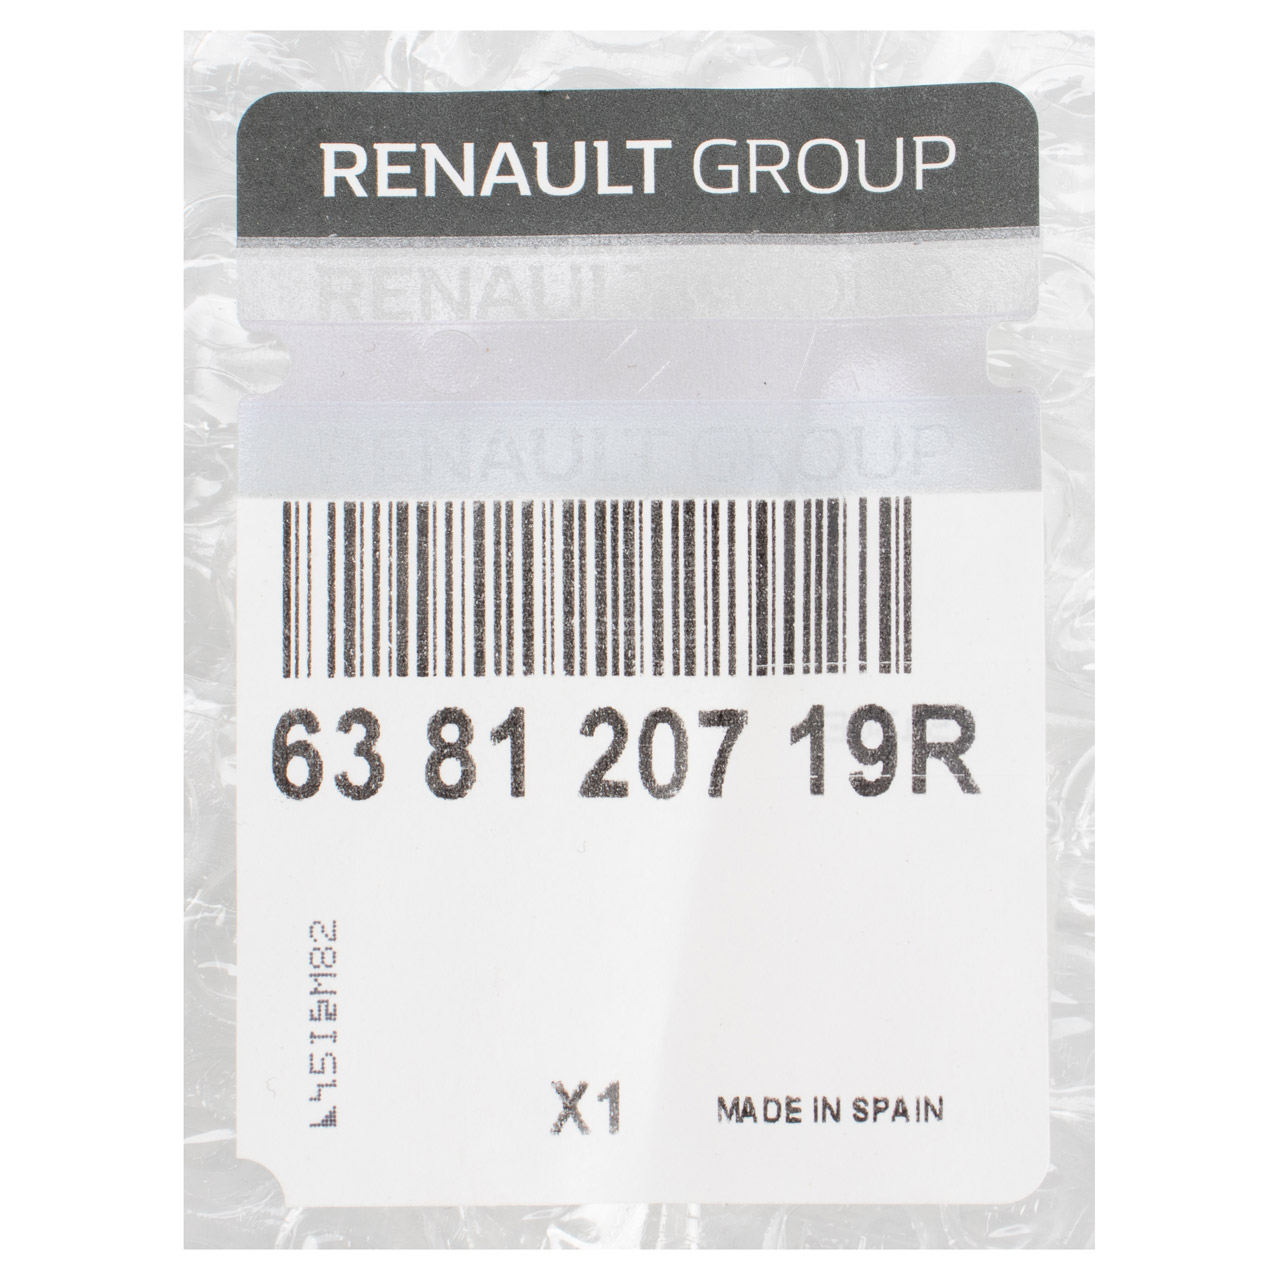 ORIGINAL Renault Verbreiterung Radlauf Captur 1 vorne rechts 638120719R